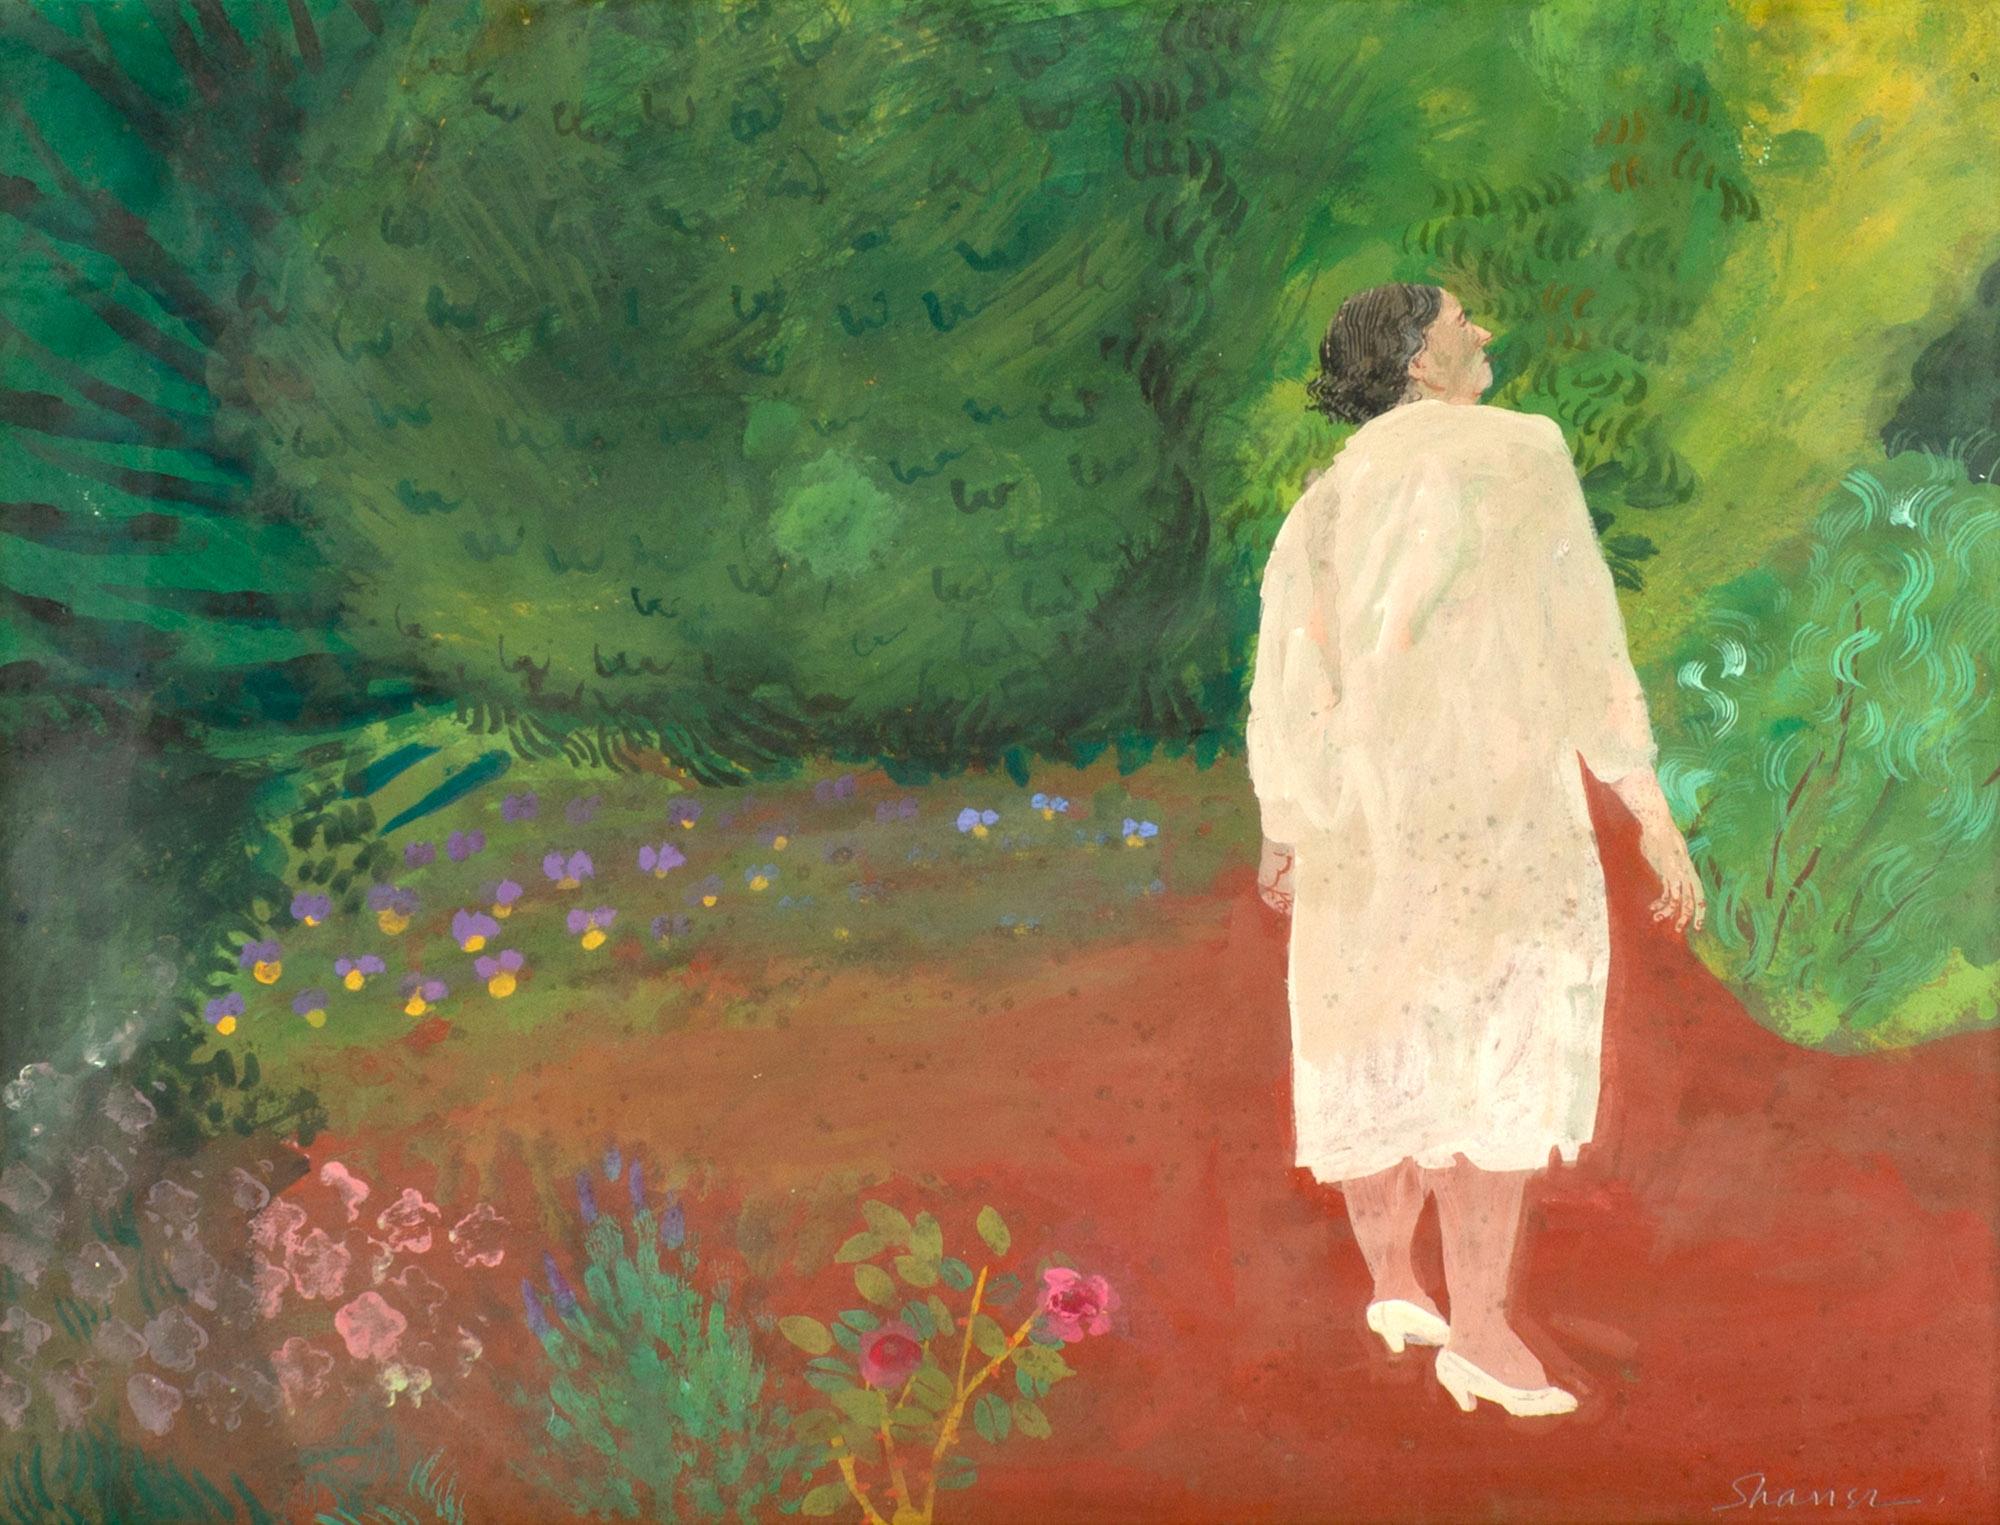 « Femme en train d'écrire », Honore Sharrer, Paysage réaliste magique avec flore et personnage